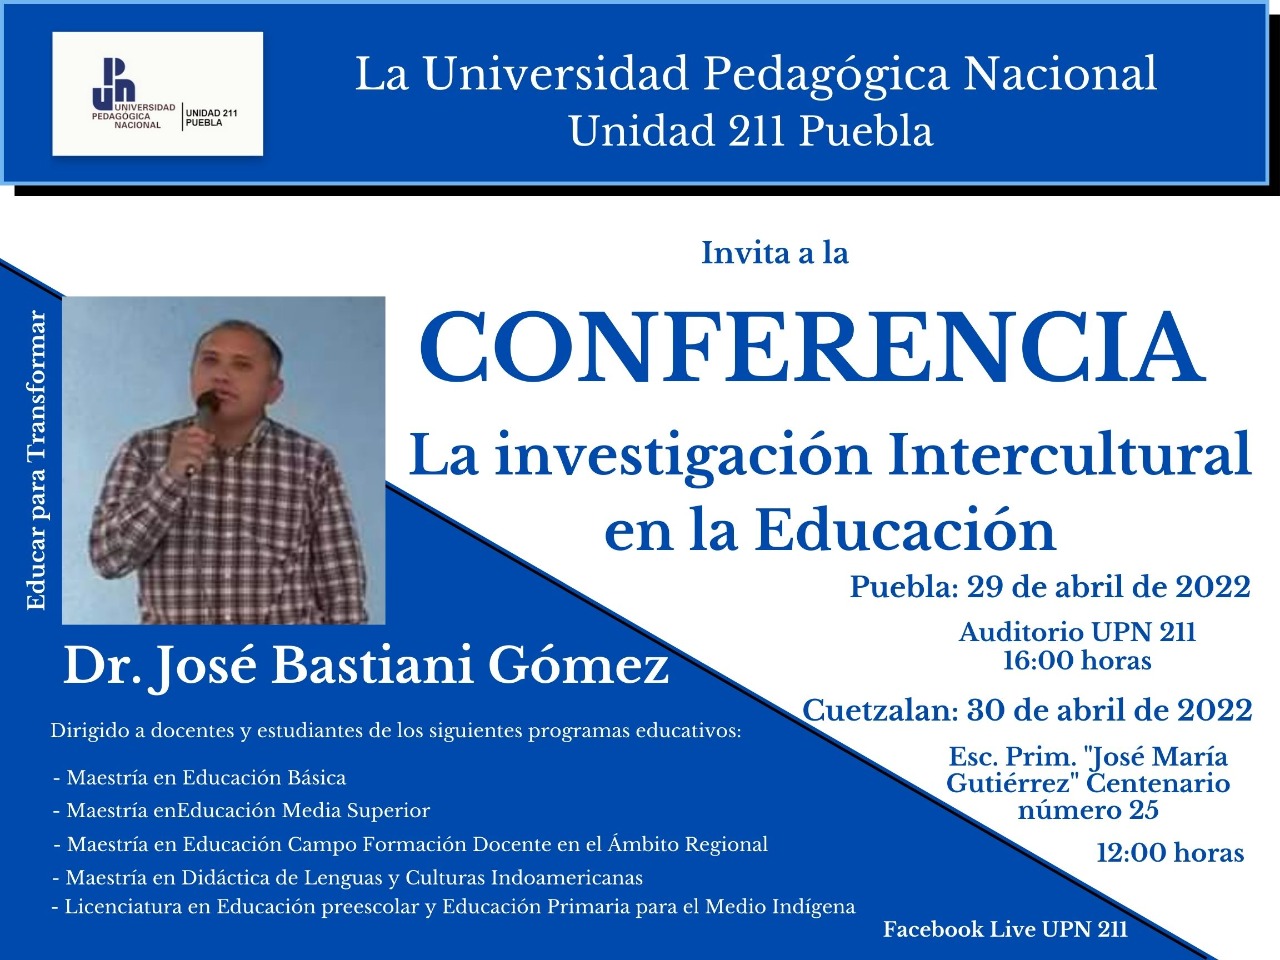 Dr. José Bastiani Gómez. La investigación intercultural en la educación